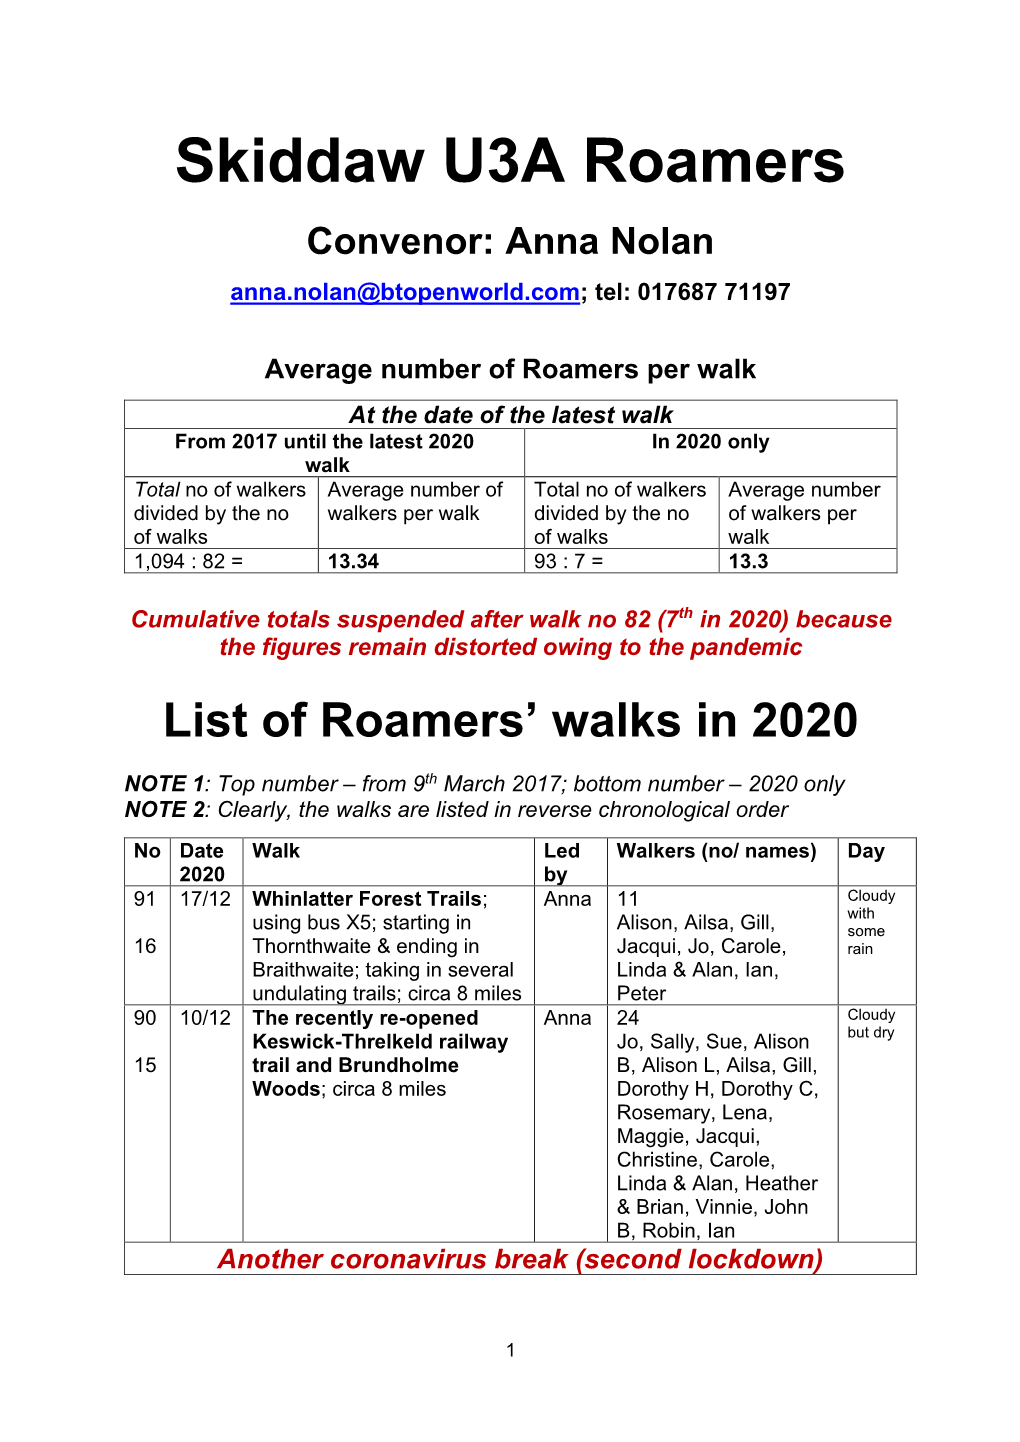 List of Roamers' Walks in 2020